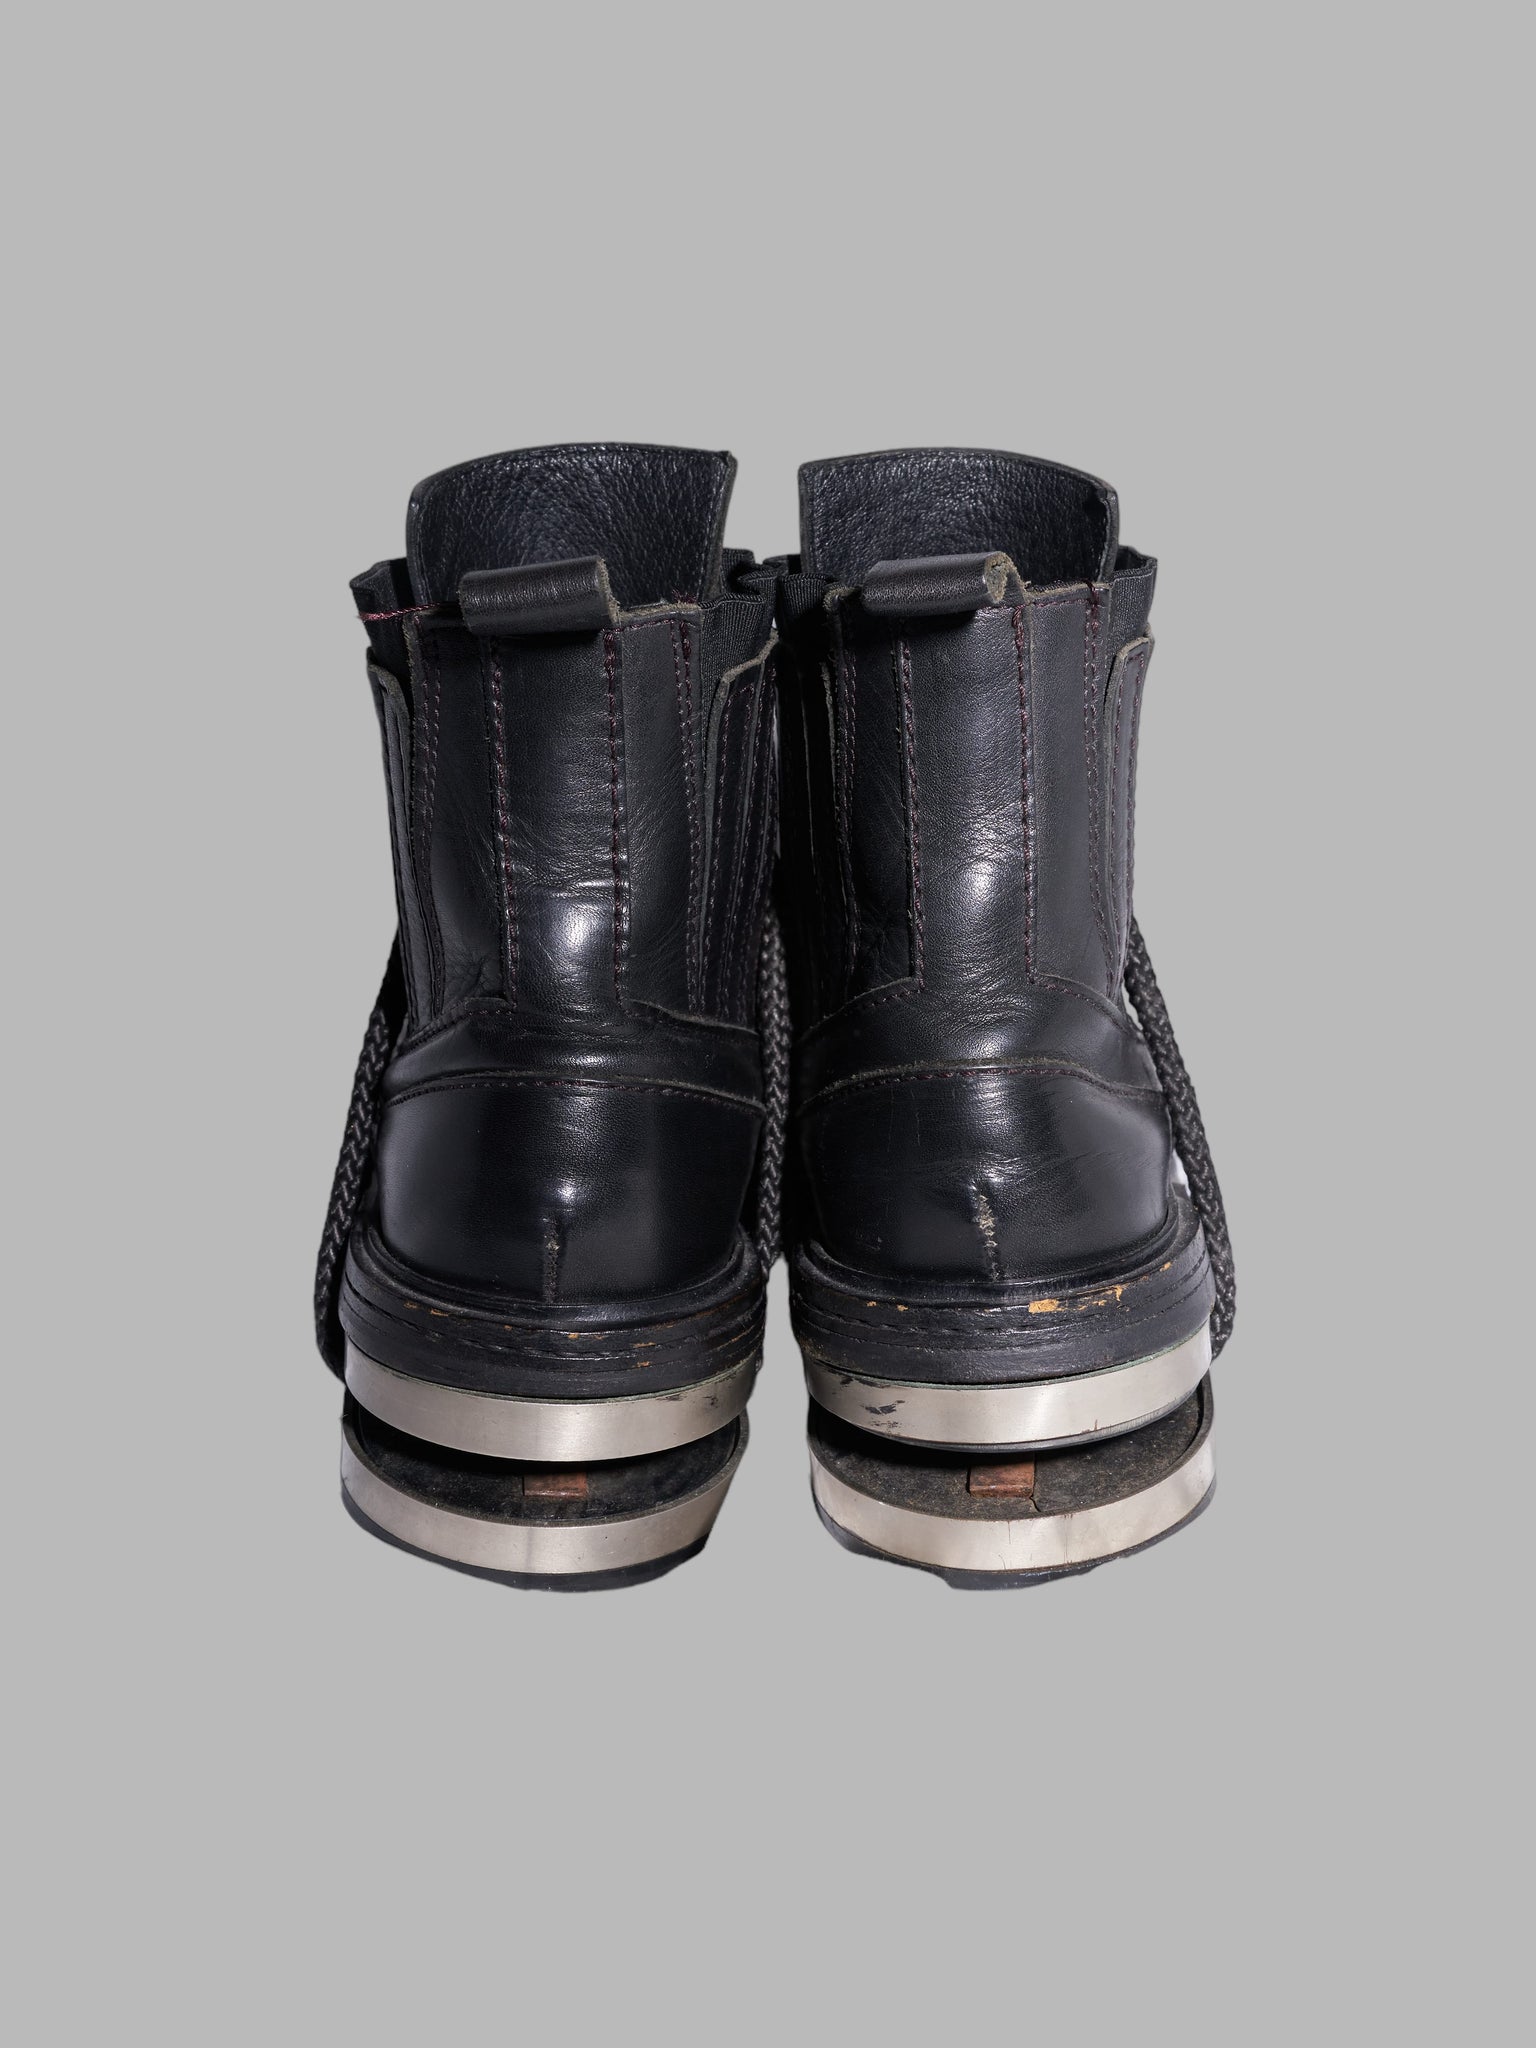 Dirk Bikkembergs 1990s black leather steel heel mountaineering boots - EU 41